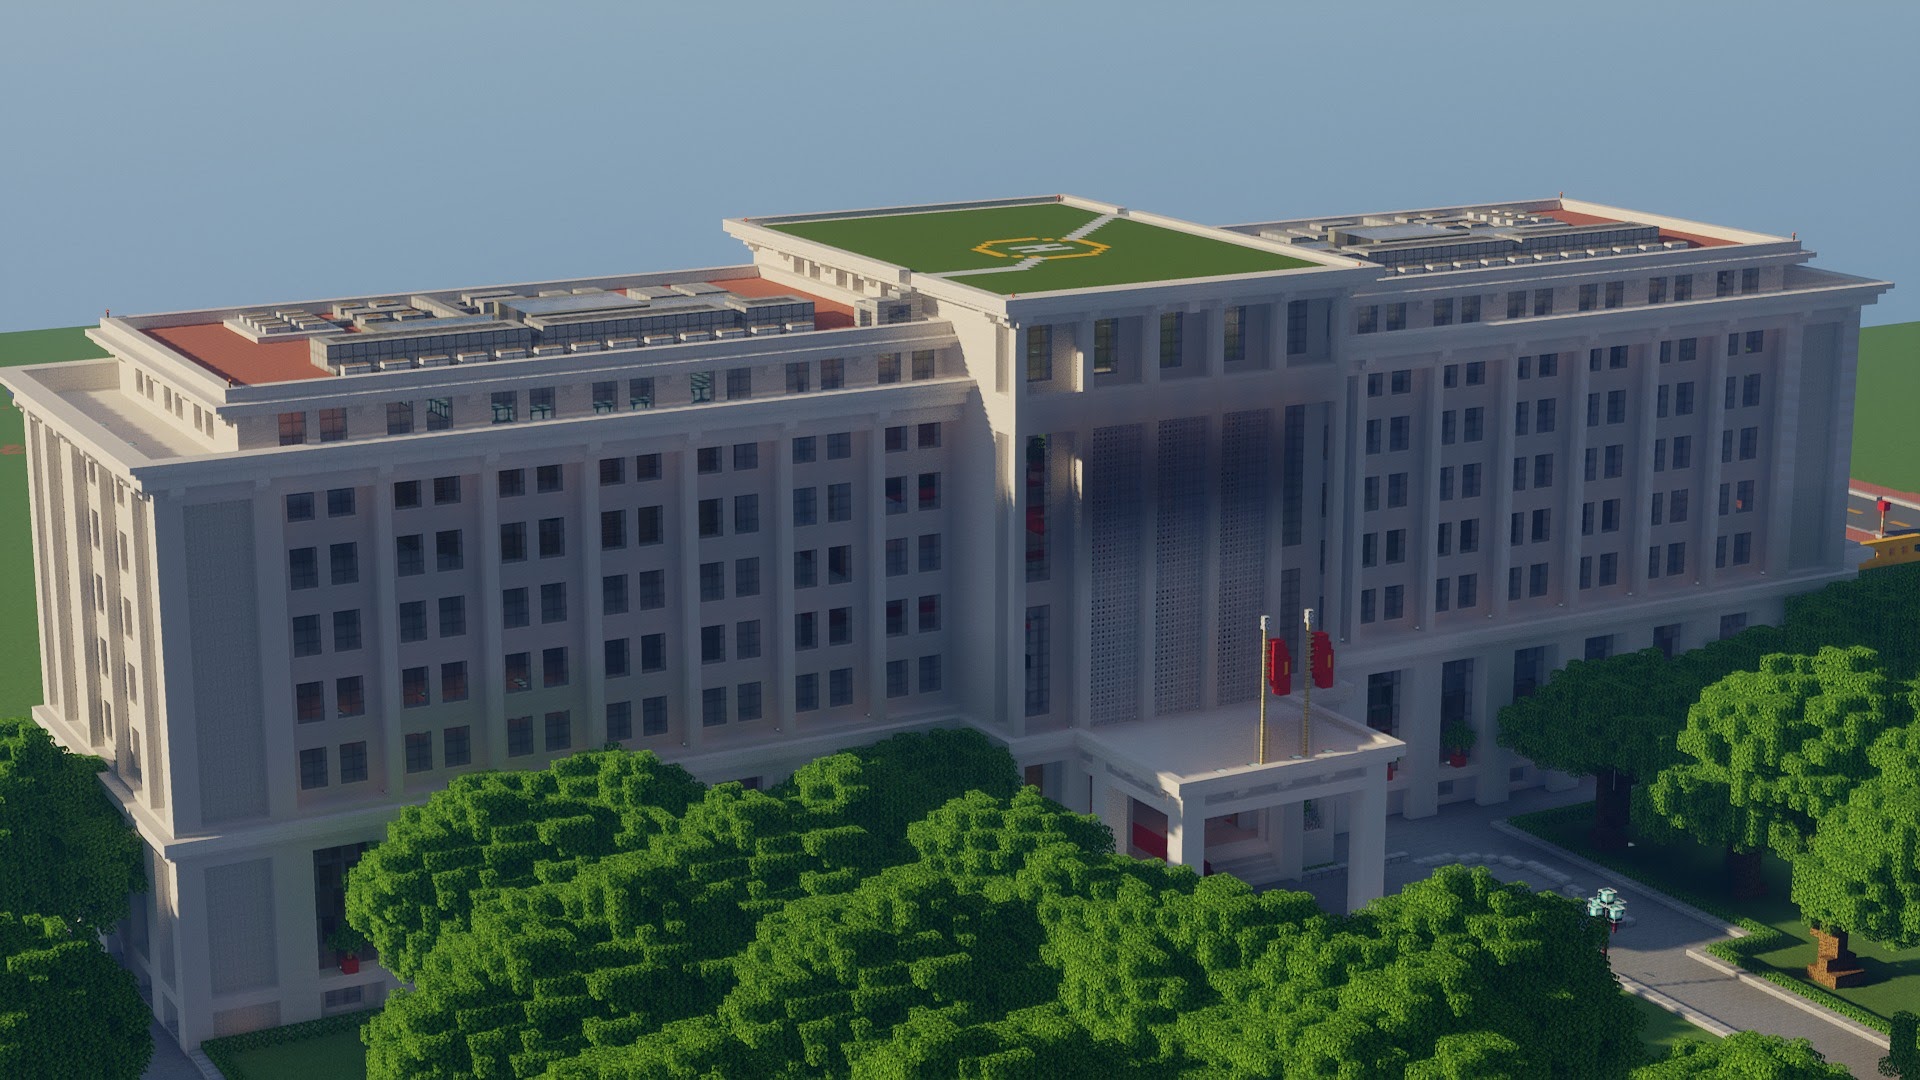 Nhóm game thủ đưa Việt Nam lên bản đồ Minecraft - 10